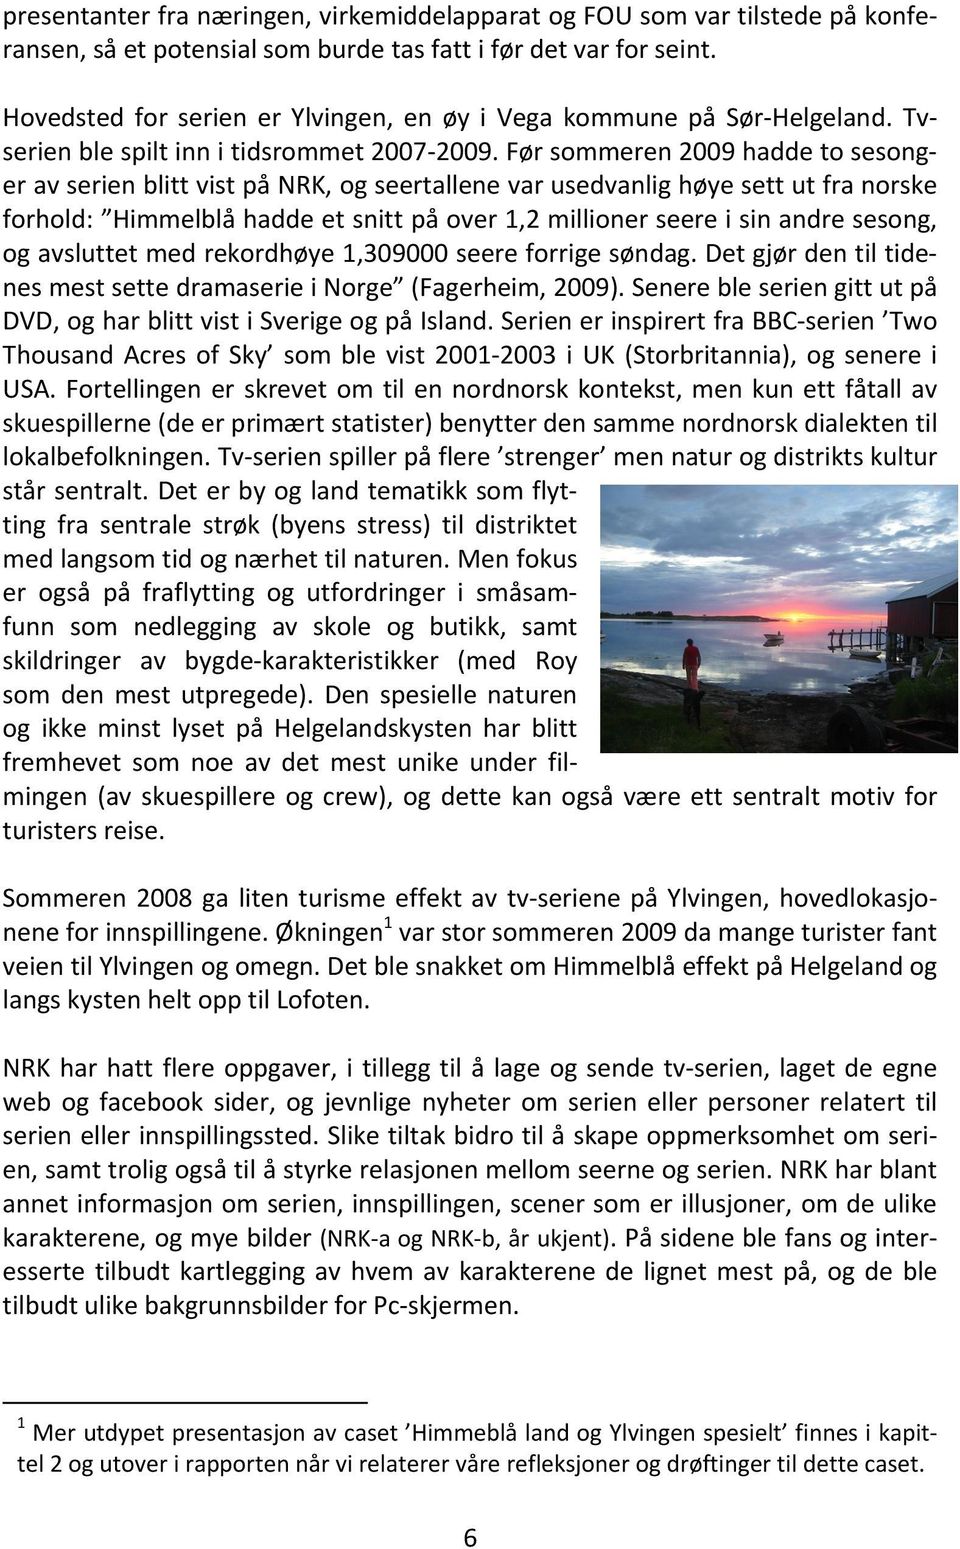 Før sommeren 2009 hadde to sesonger av serien blitt vist på NRK, og seertallene var usedvanlig høye sett ut fra norske forhold: Himmelblå hadde et snitt på over 1,2 millioner seere i sin andre